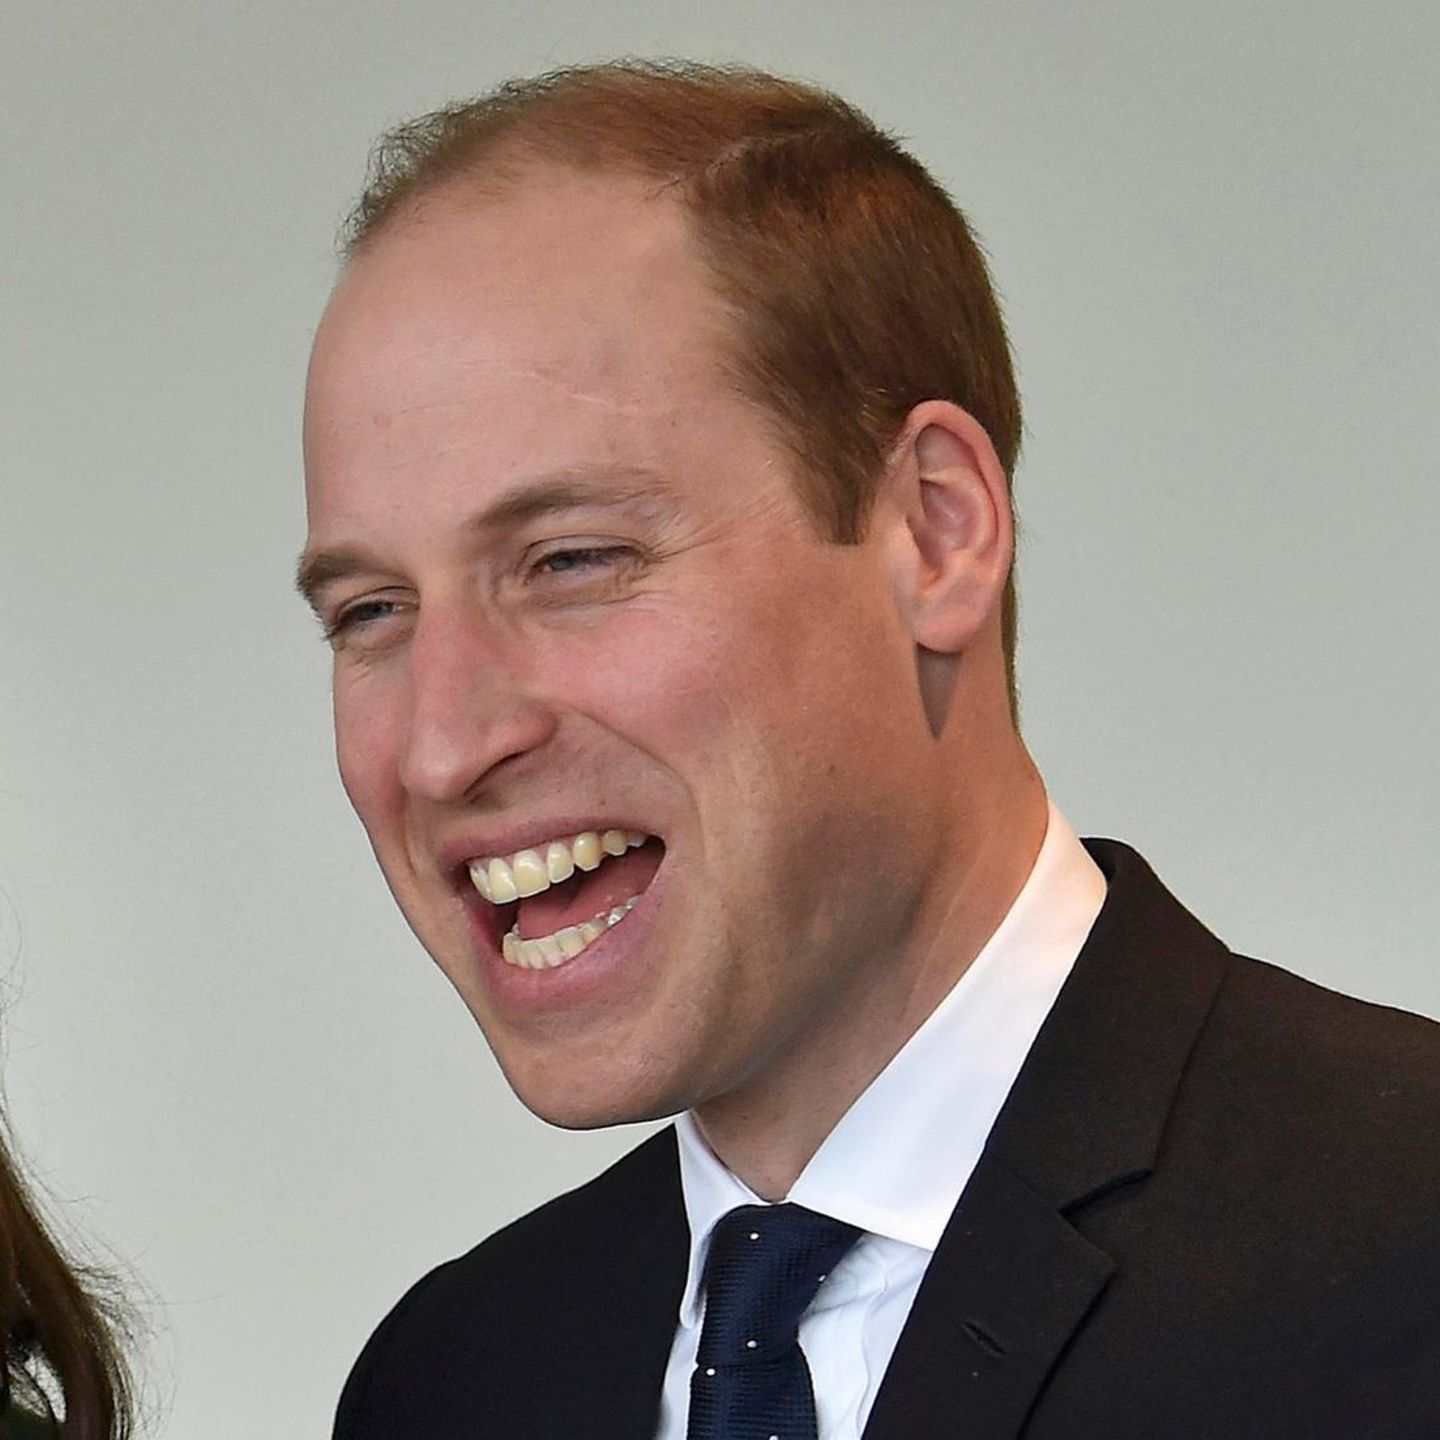 Promis mit und ohne Bart: Prinz William ohne Bart